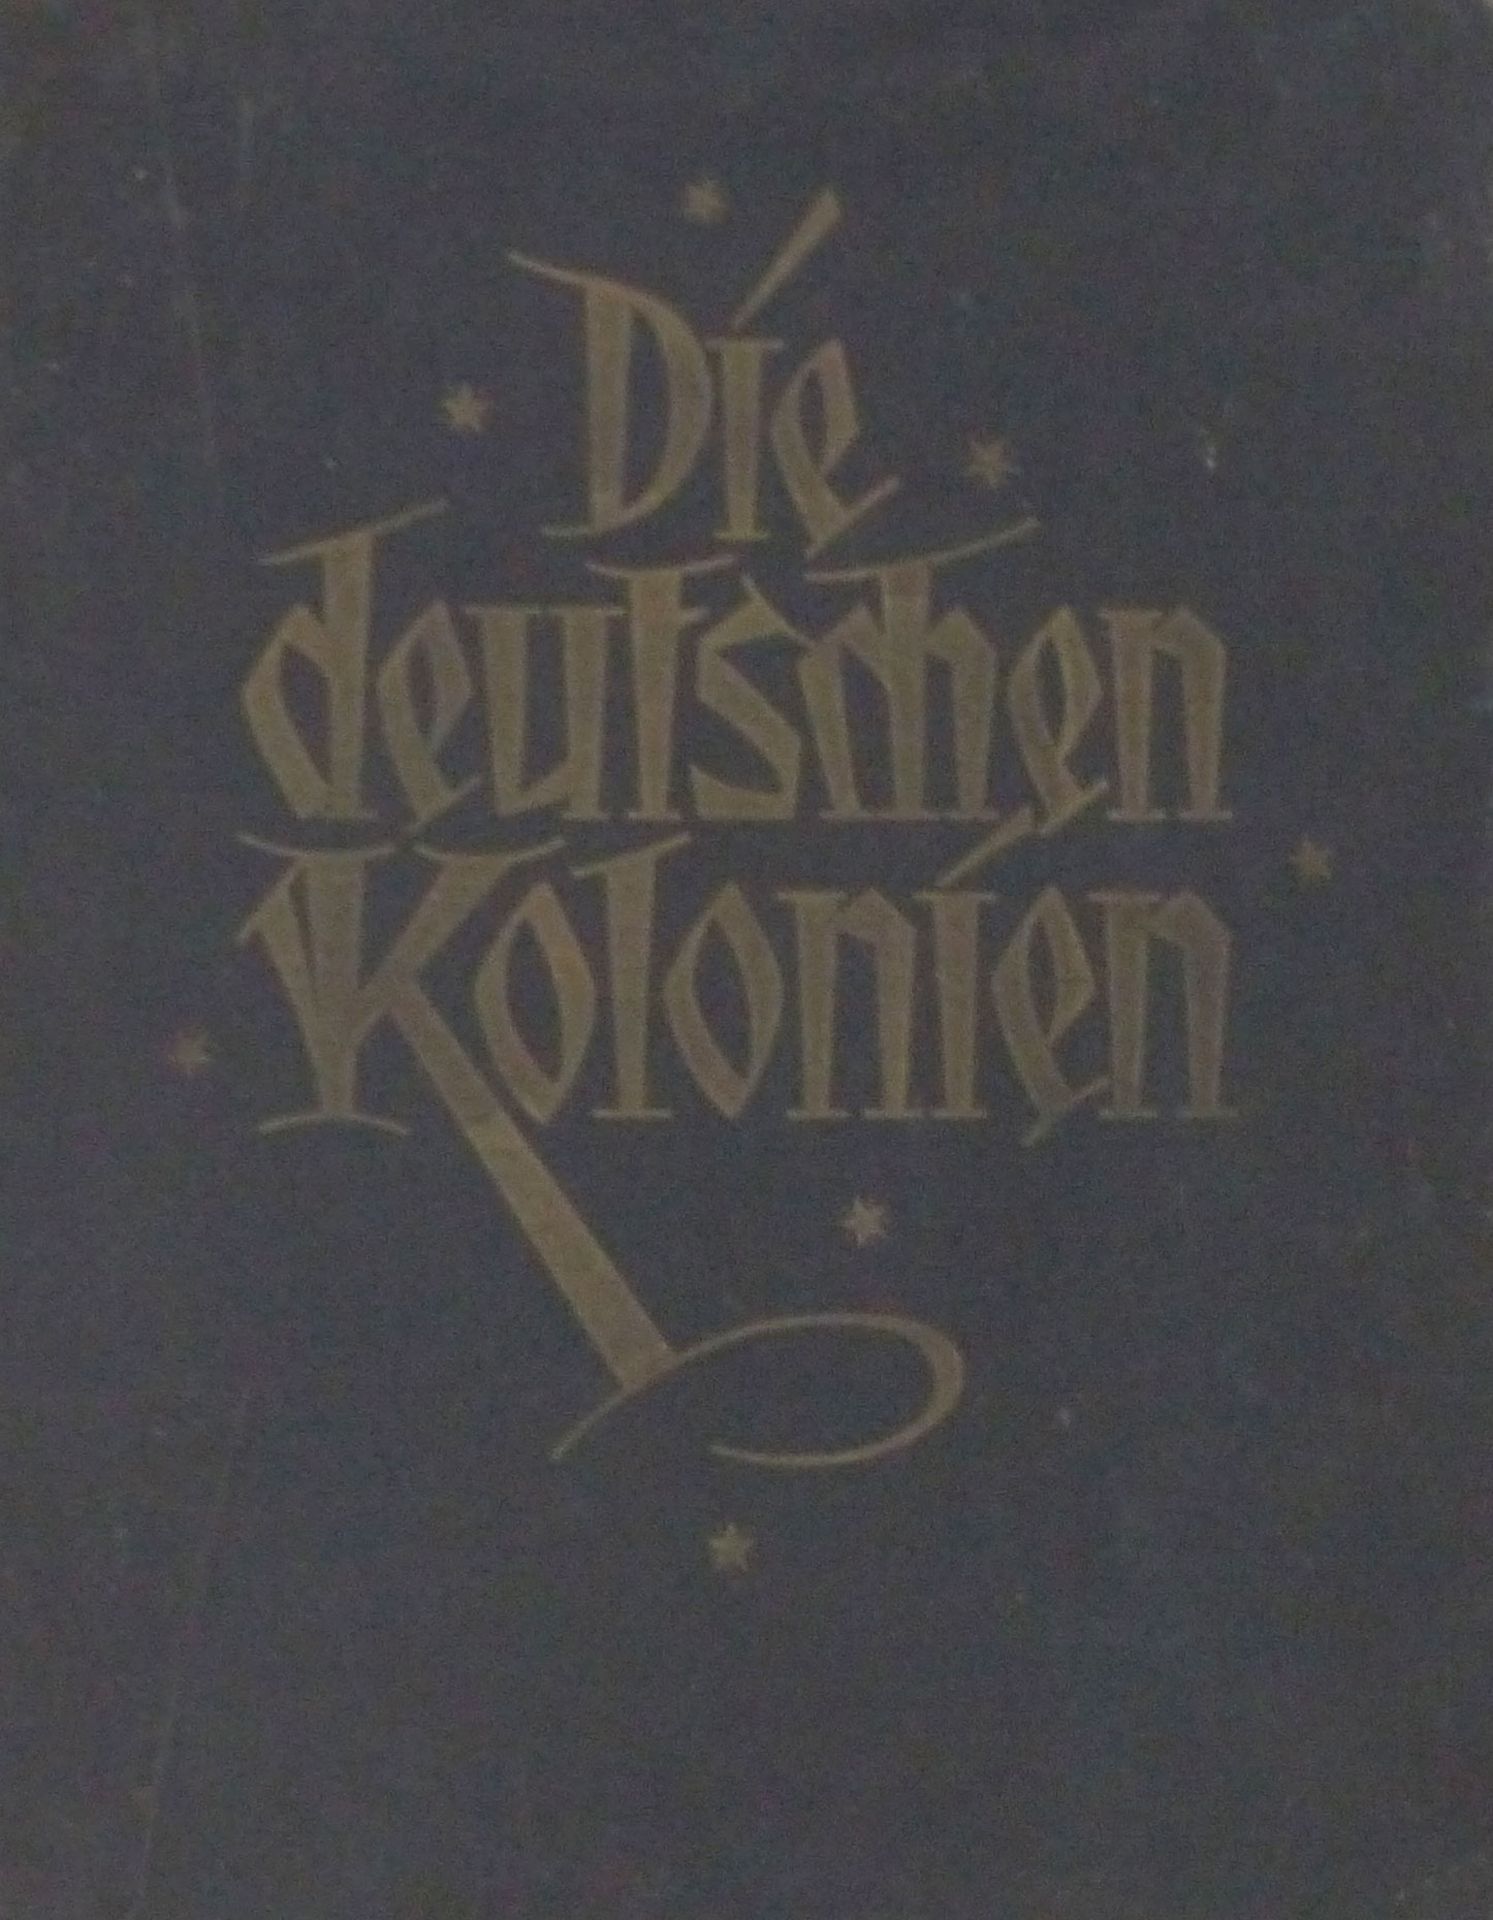 Buch Kolonien Die Deutschen Kolonien hrsg. v. Major Schwabe u. Dr. Leutwein 1925 Verlagsanstalt Carl